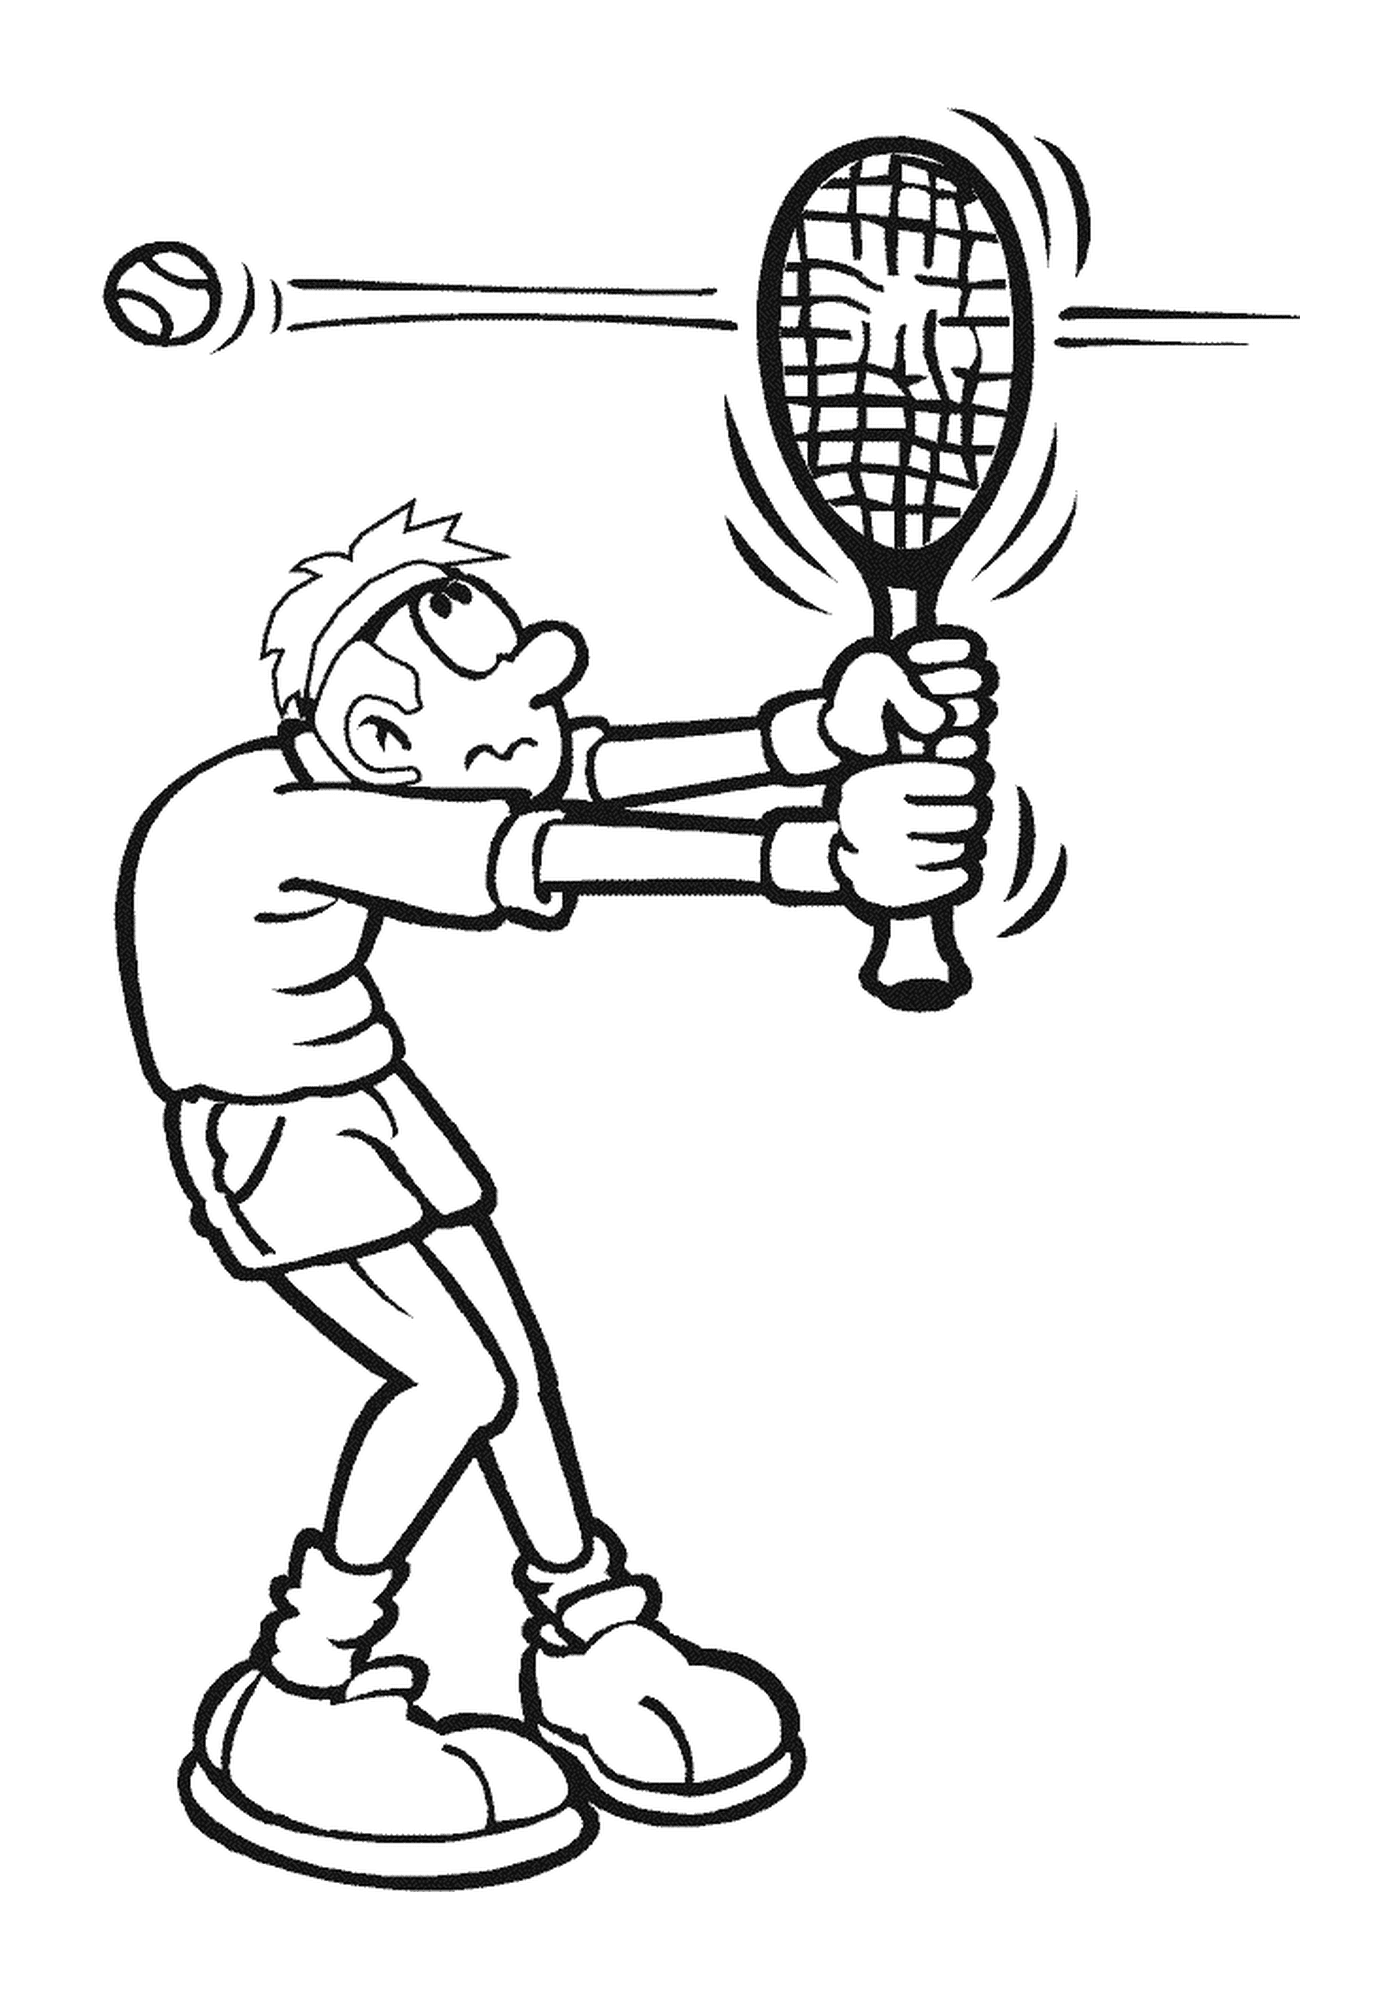  Человек держит теннисную ракетку 